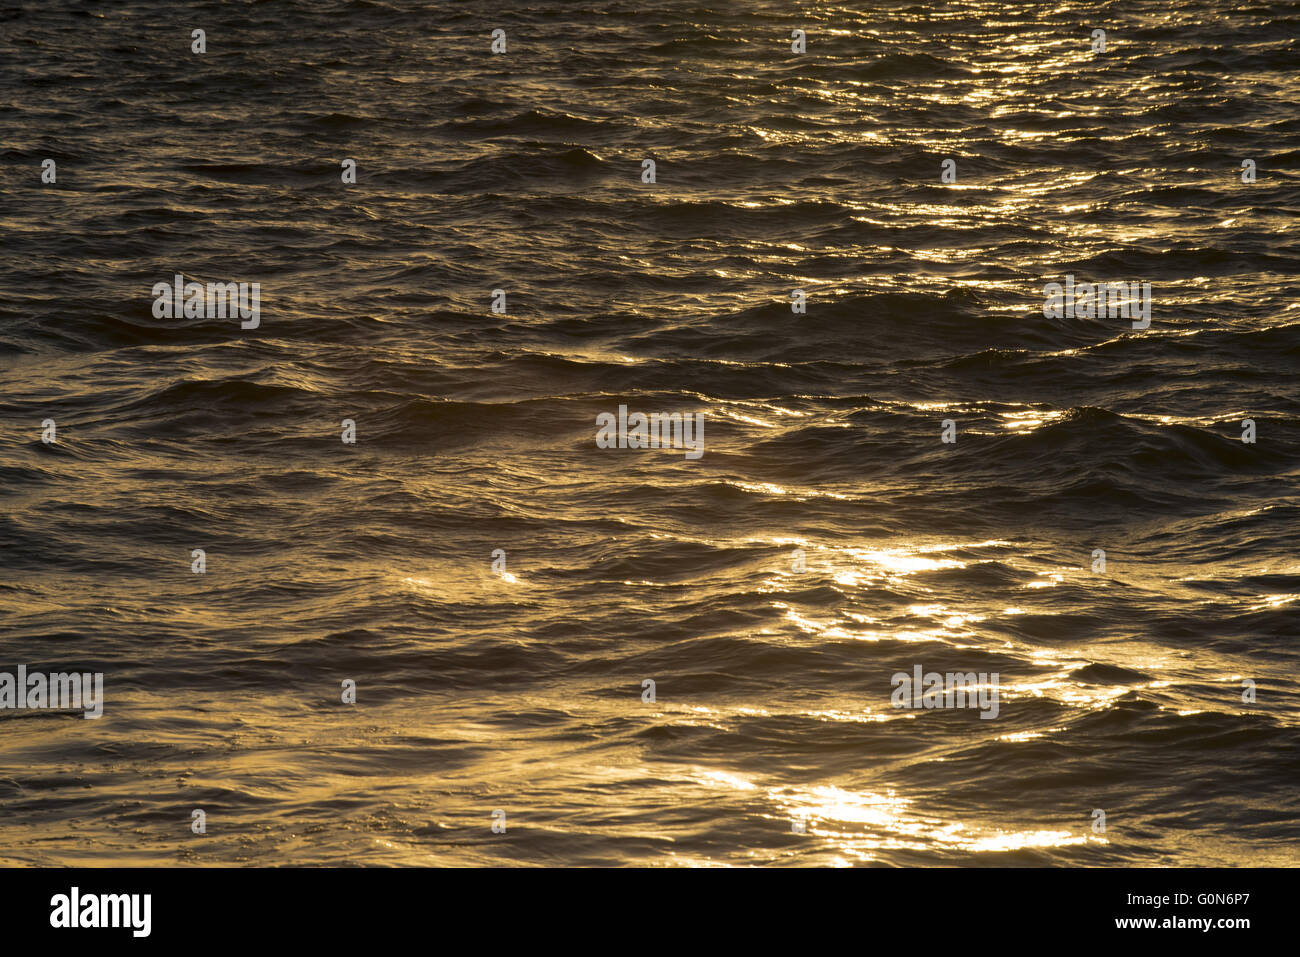 Les vagues de l'océan reflétant la lumière du soleil au coucher du soleil, l'eau de mer sur la surface tranquille. Banque D'Images